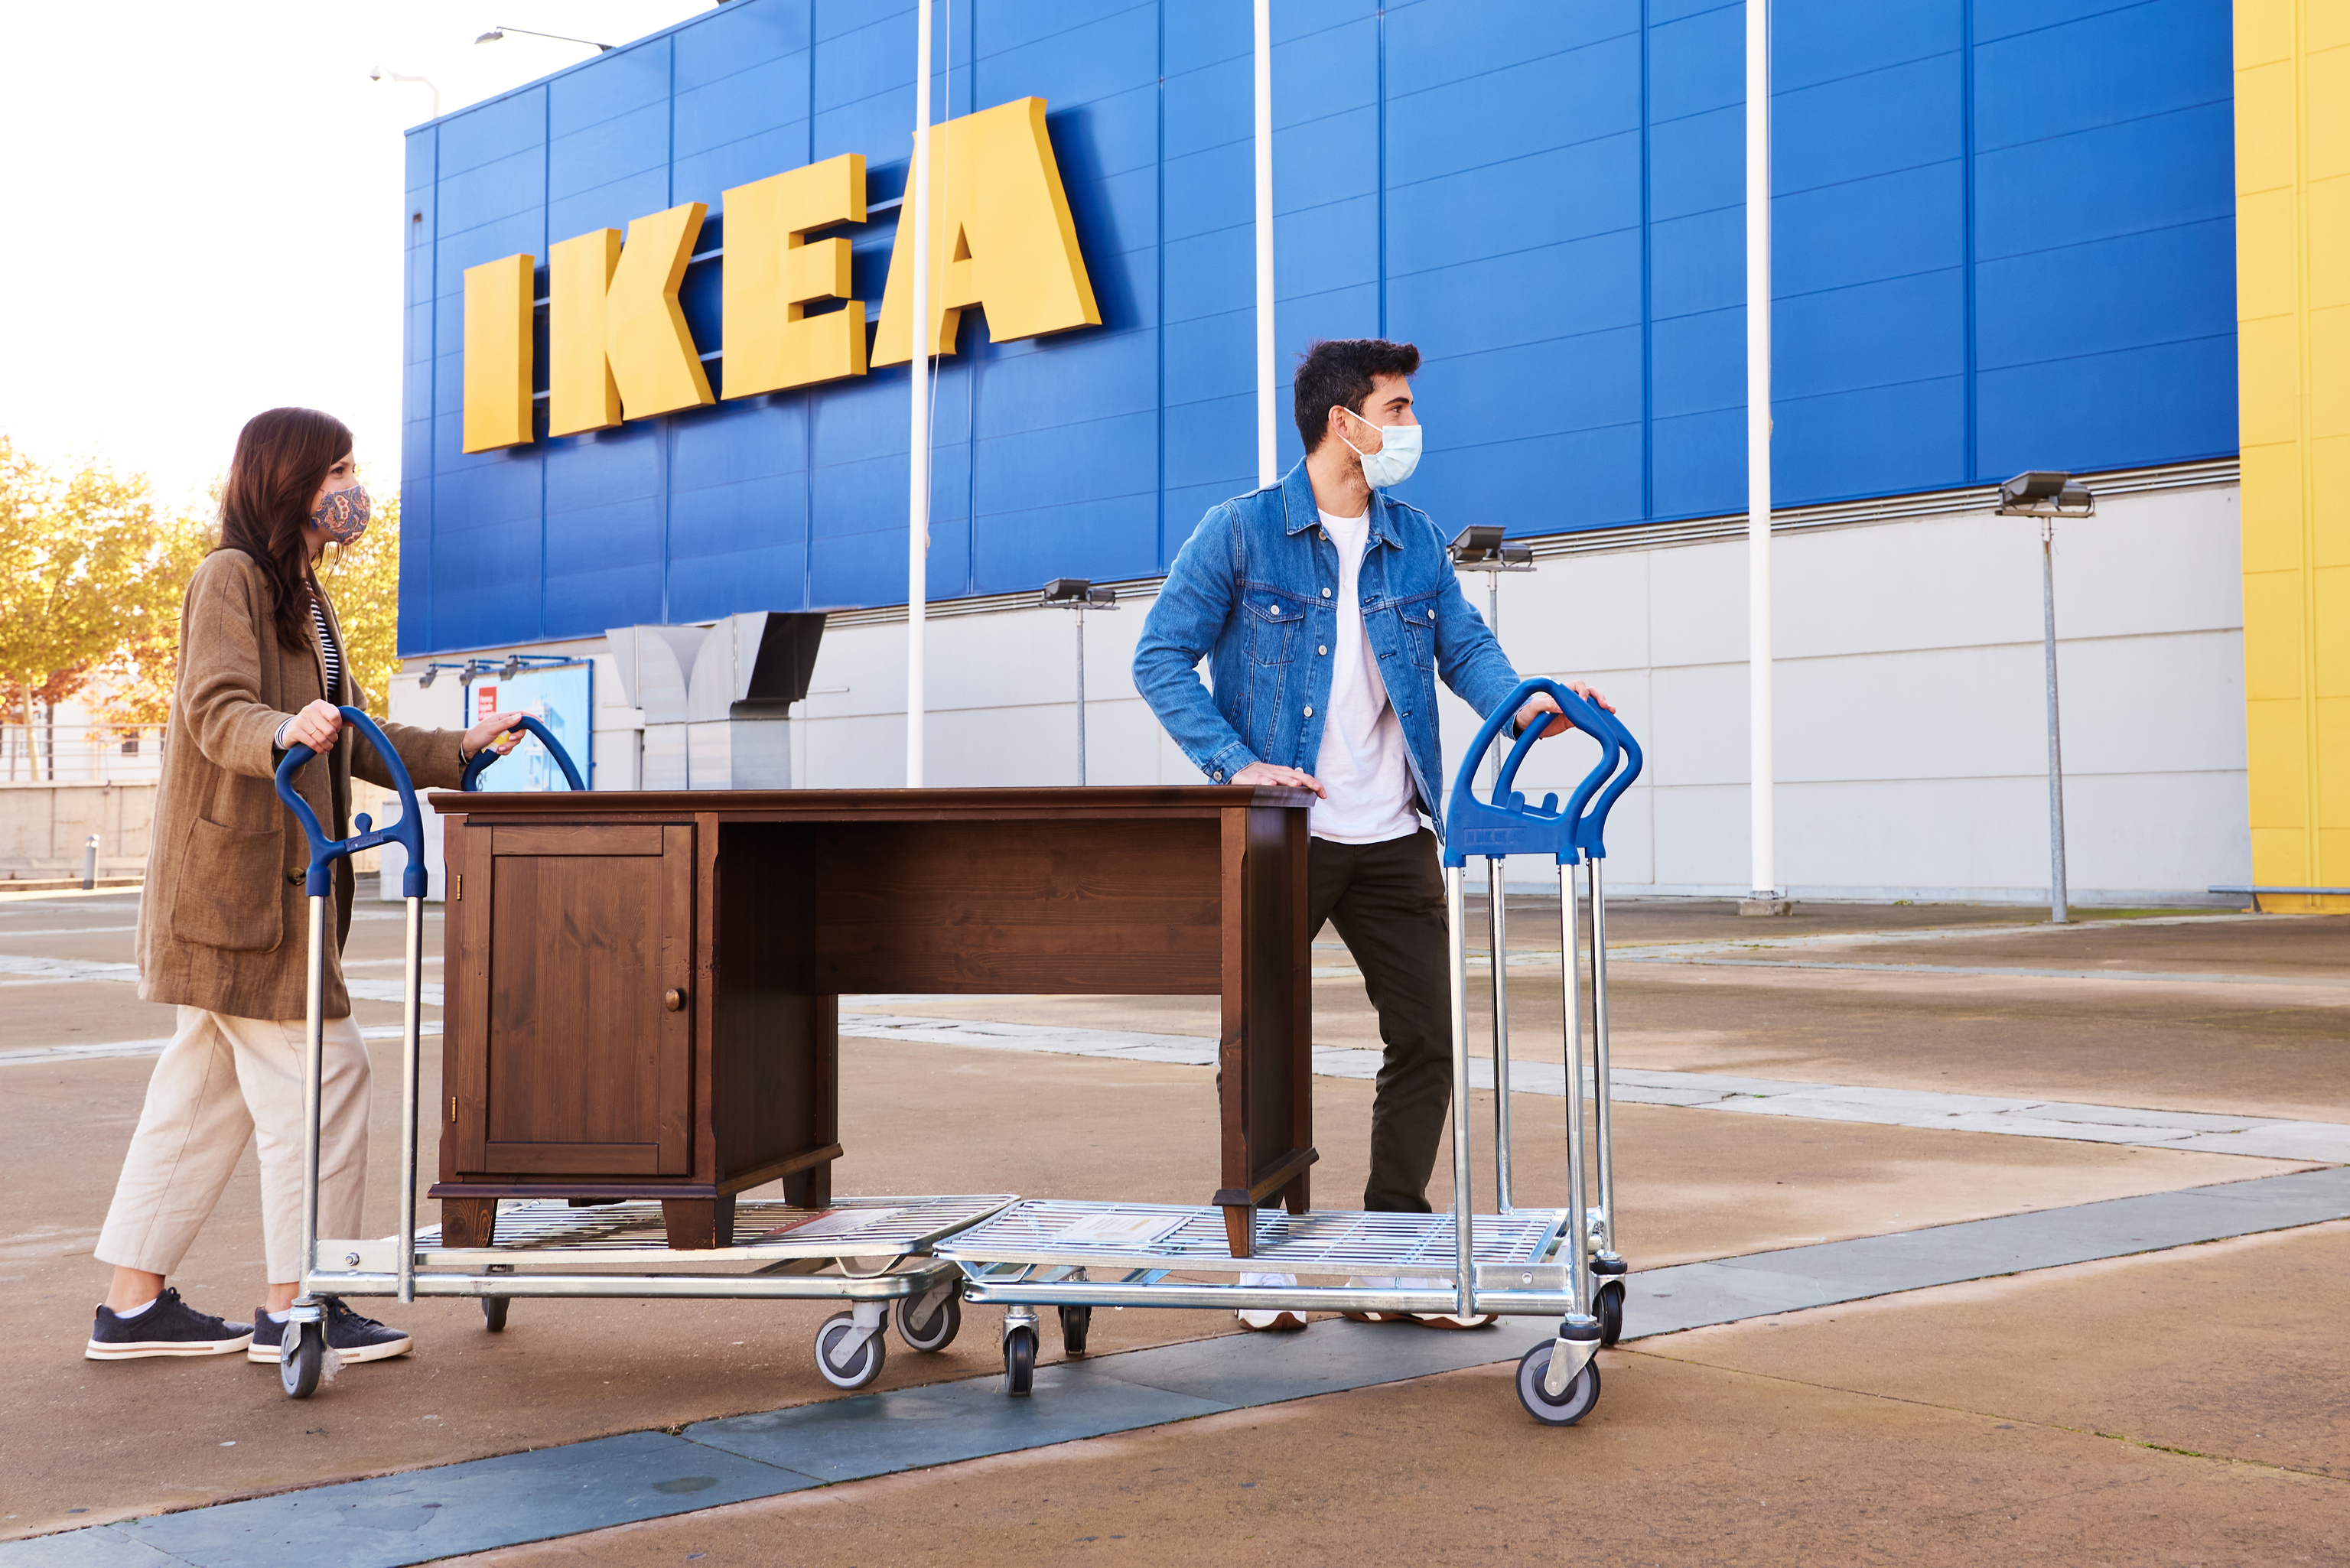 Ikea quiere una gestin ms eficiente de los recursos con esta medida para reducir su impacto ambiental.